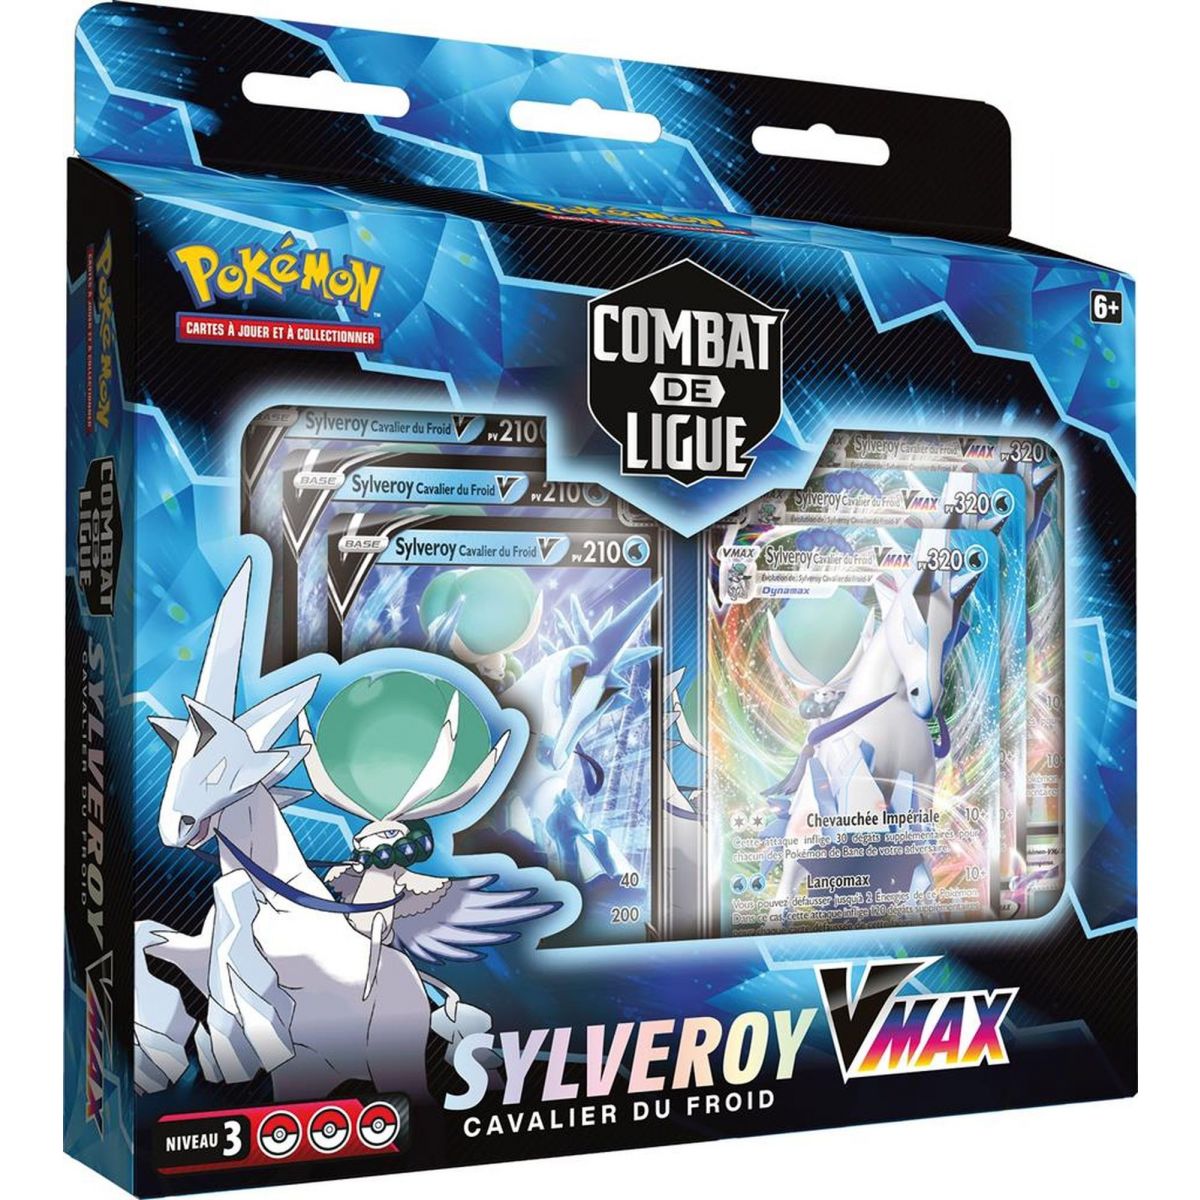 Item Pokémon - Deck Combat de Ligue - Sylveroy Cavalier du Froid VMAX